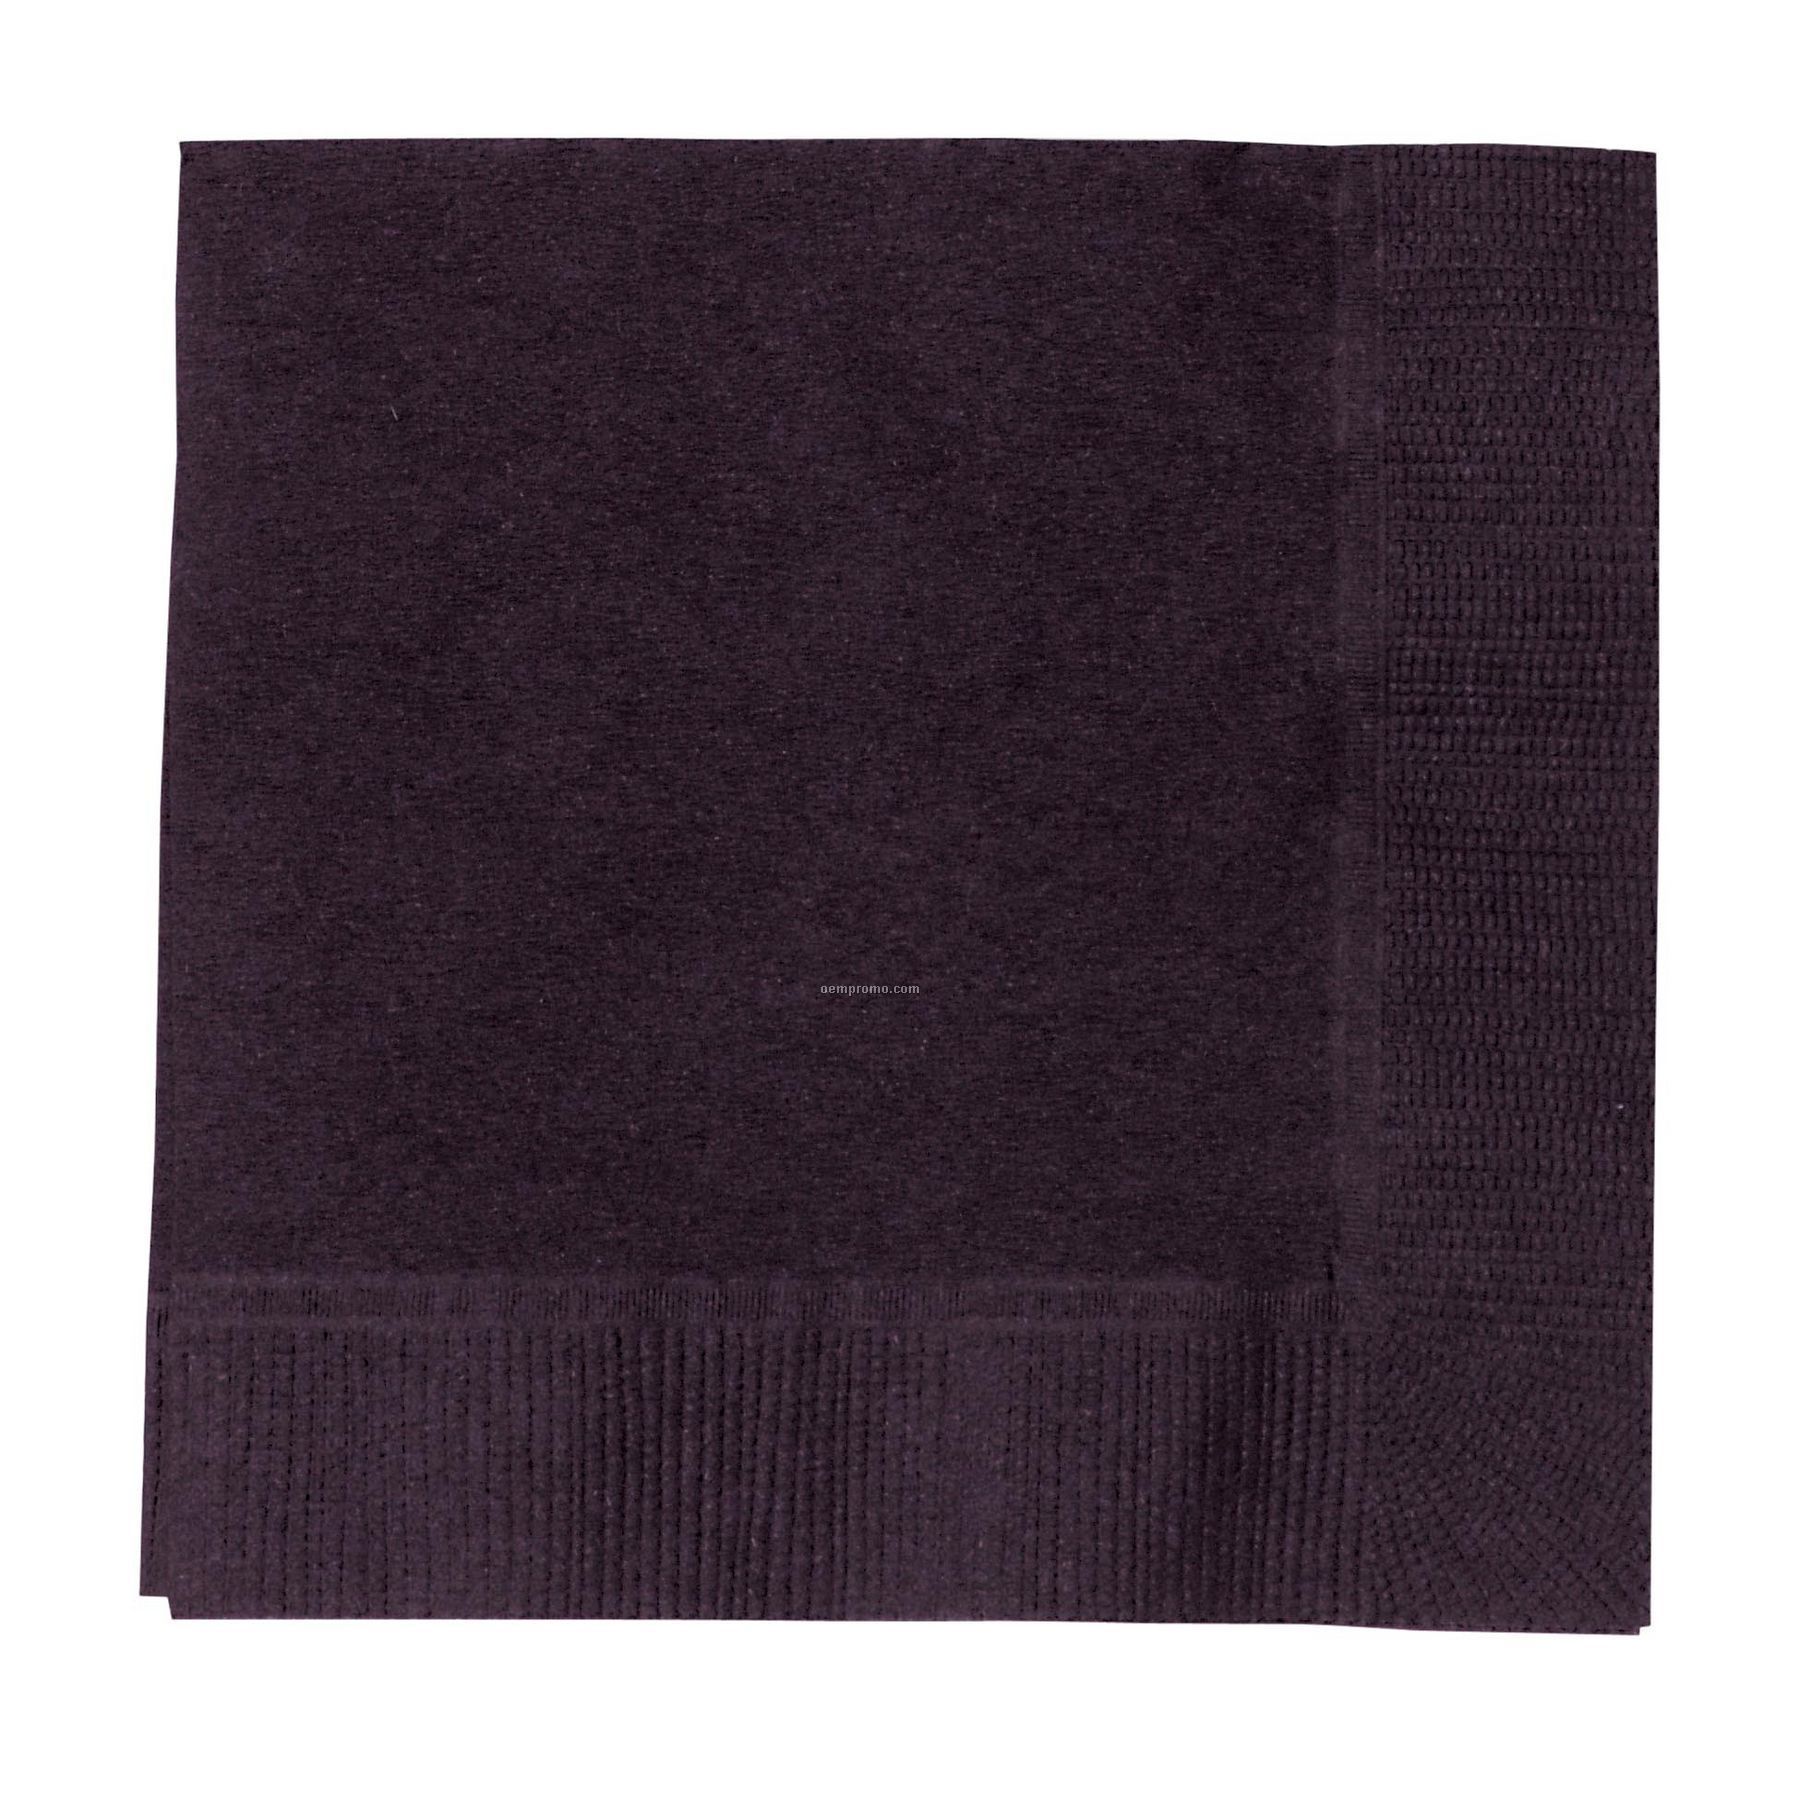 Colorware Black Velvet Dinner Napkins With 1/4 Fold